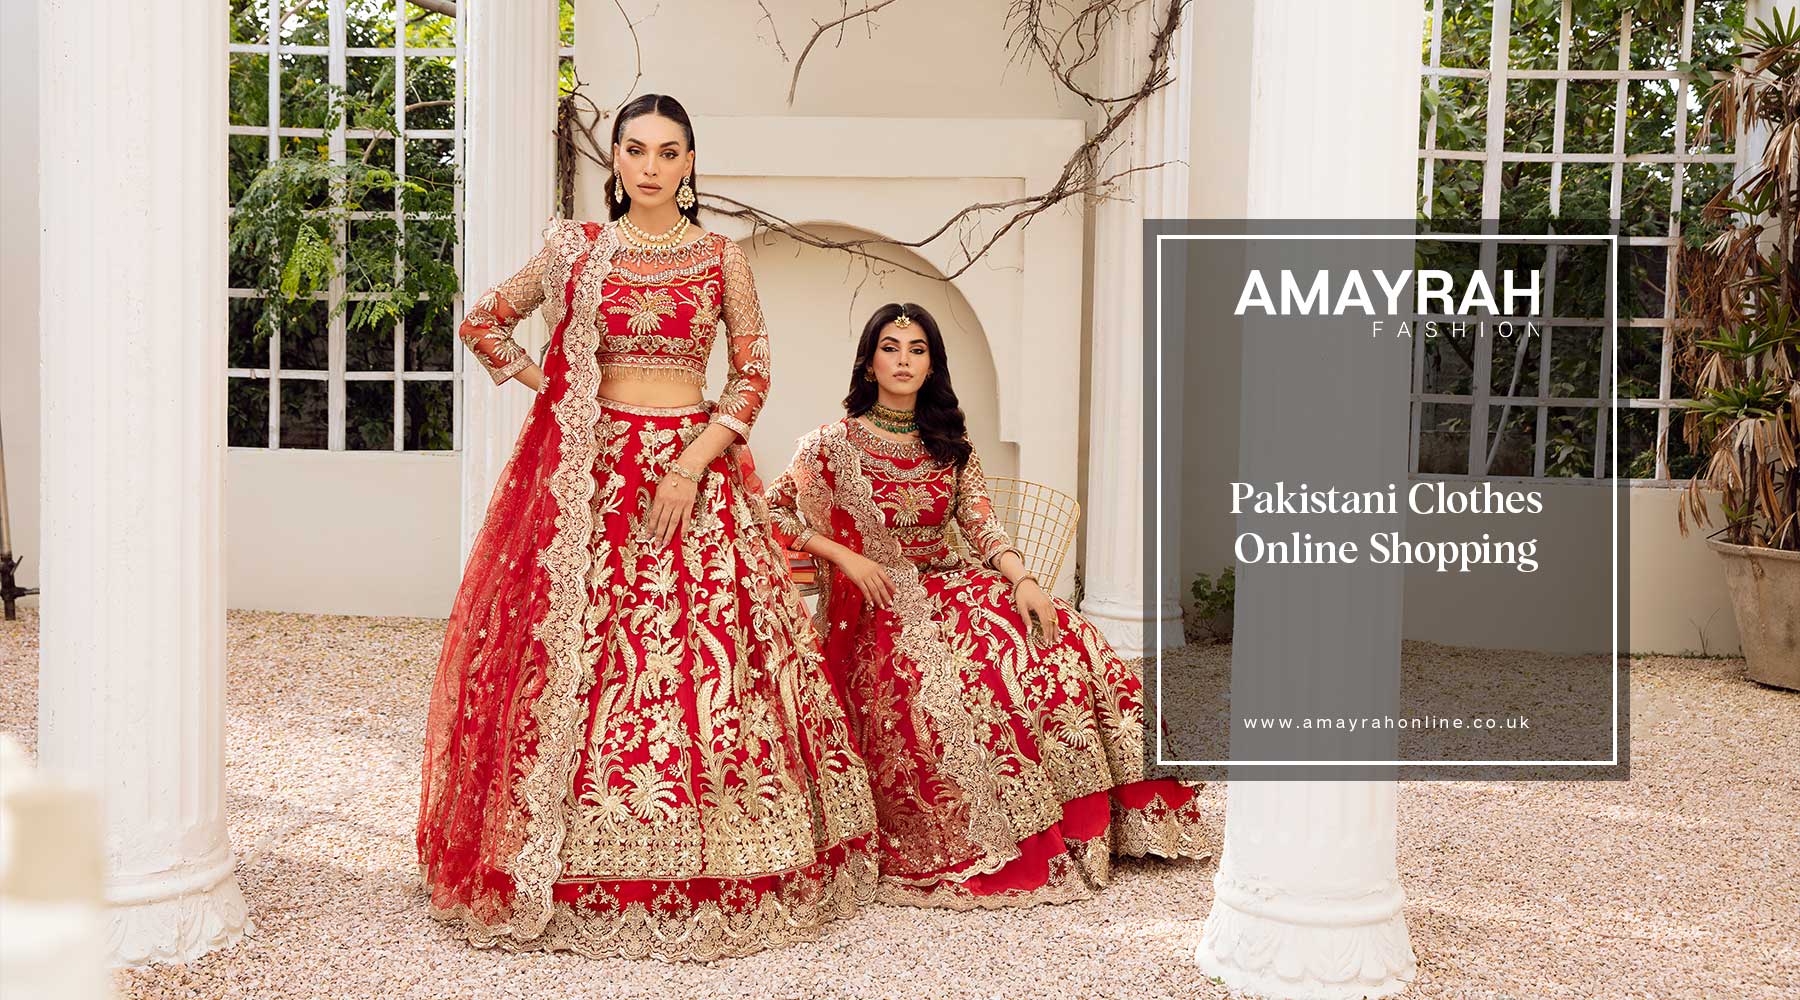 Exploring Pakistani Fashion with Amayrah Fashion